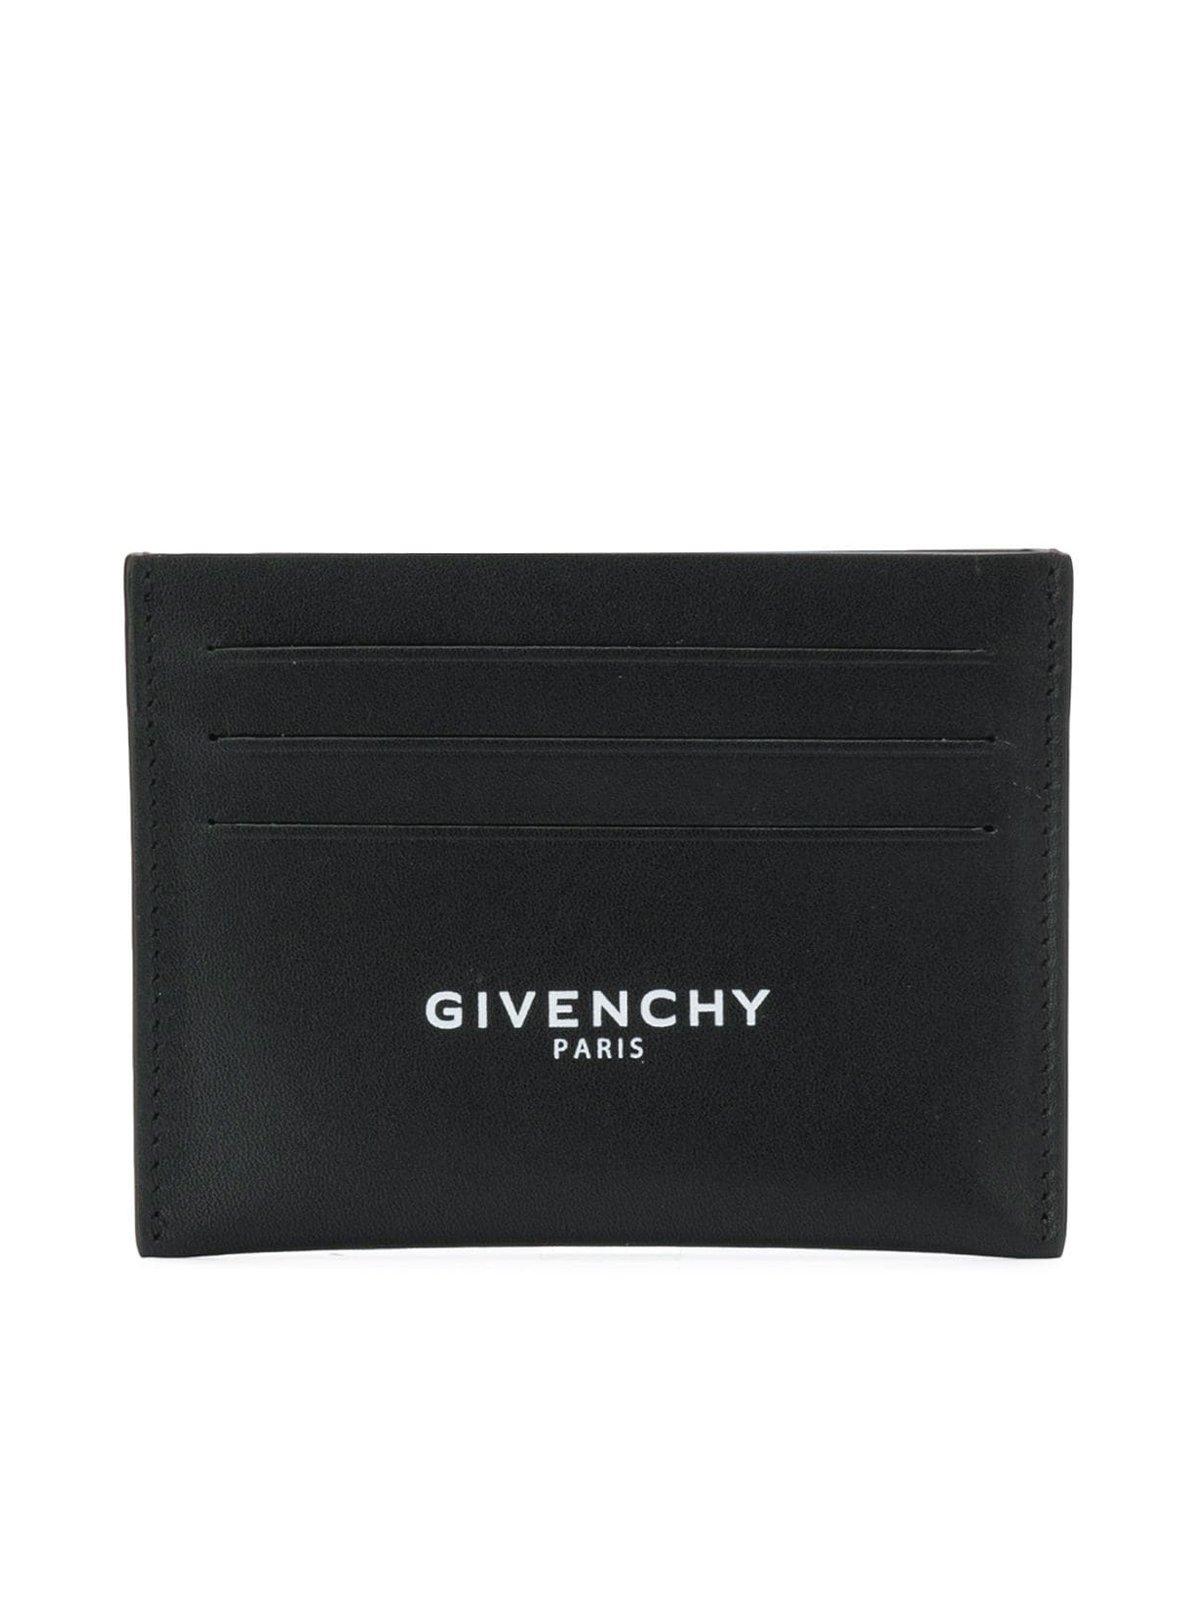 Givenchy Logo Card Holder in Black for Men - Lyst